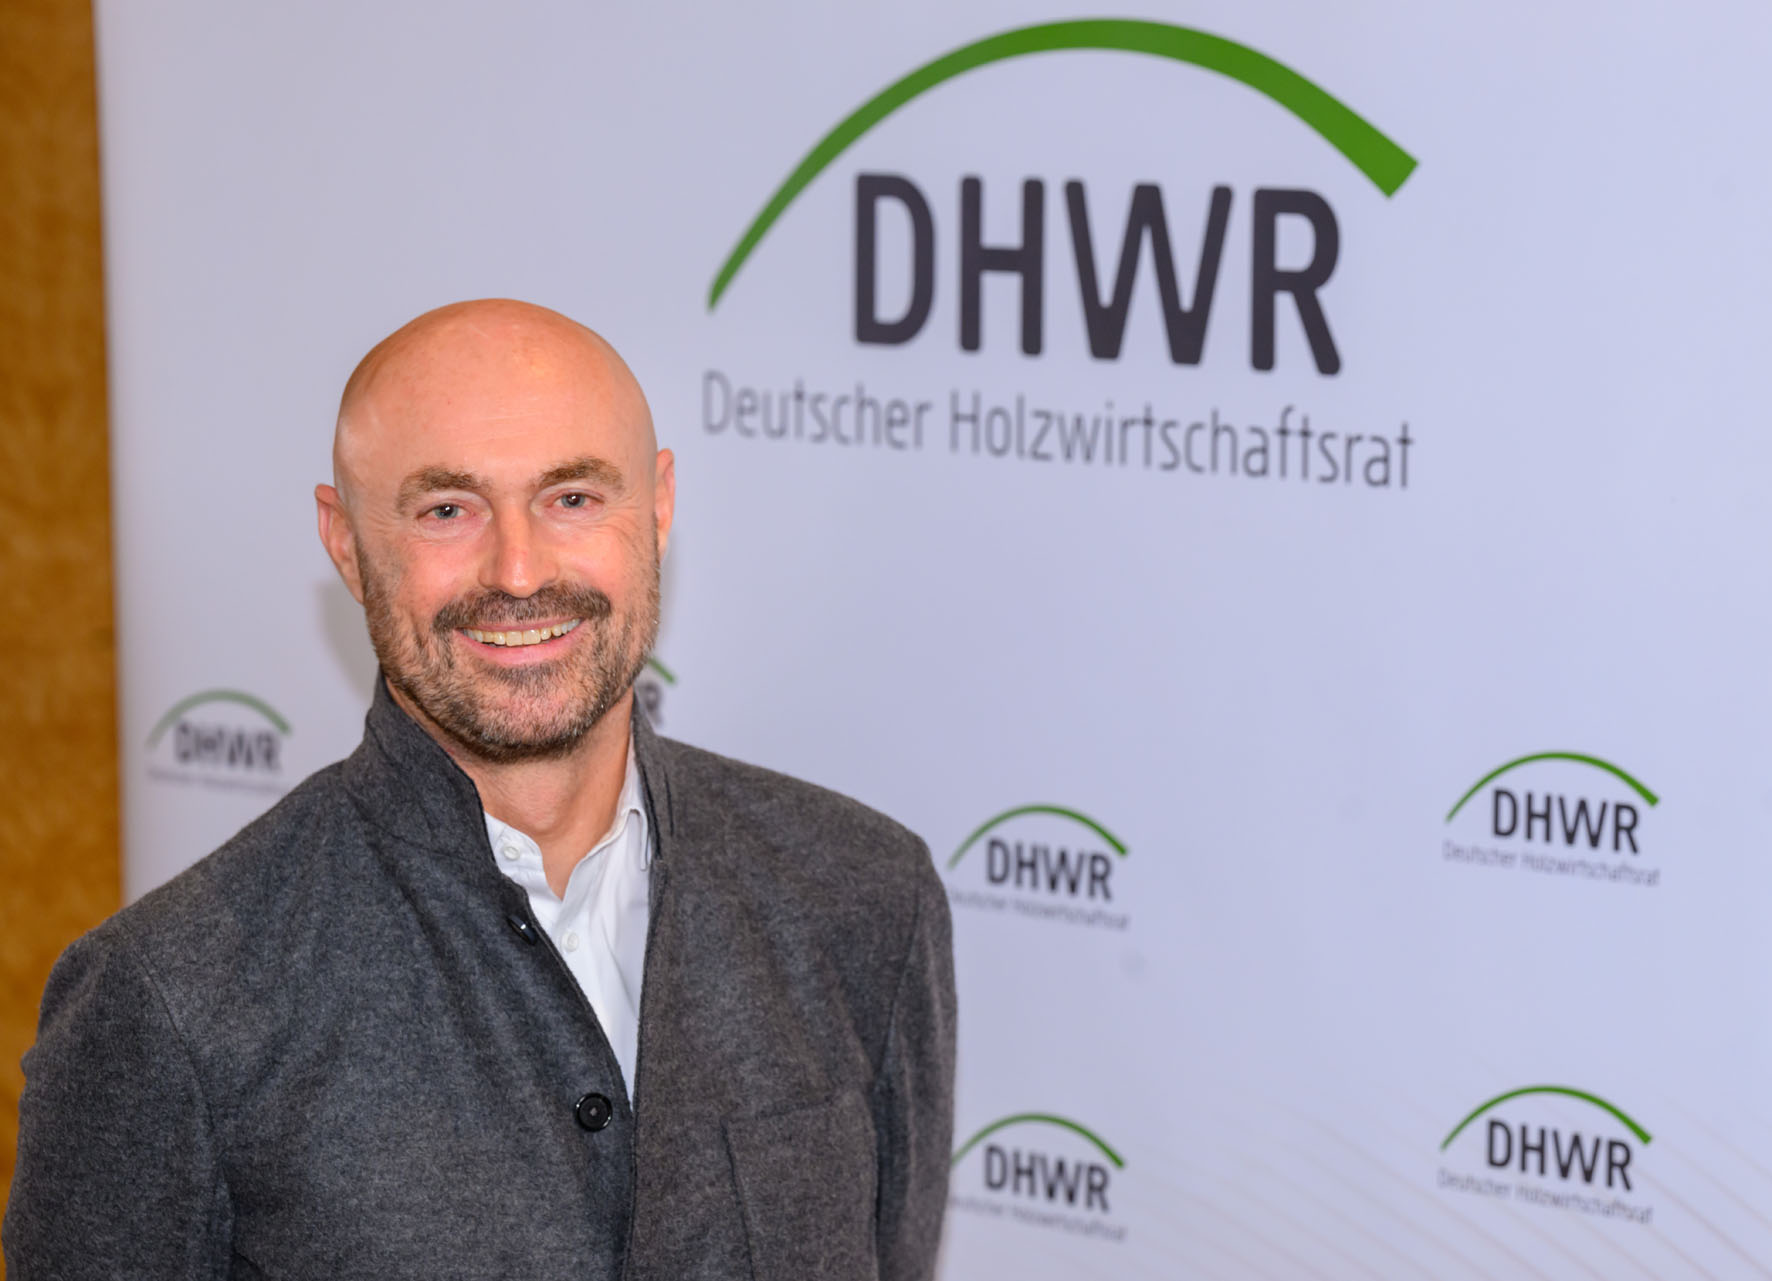 Jörn Kimmich zum Vizepräsidenten des DHWR gewählt